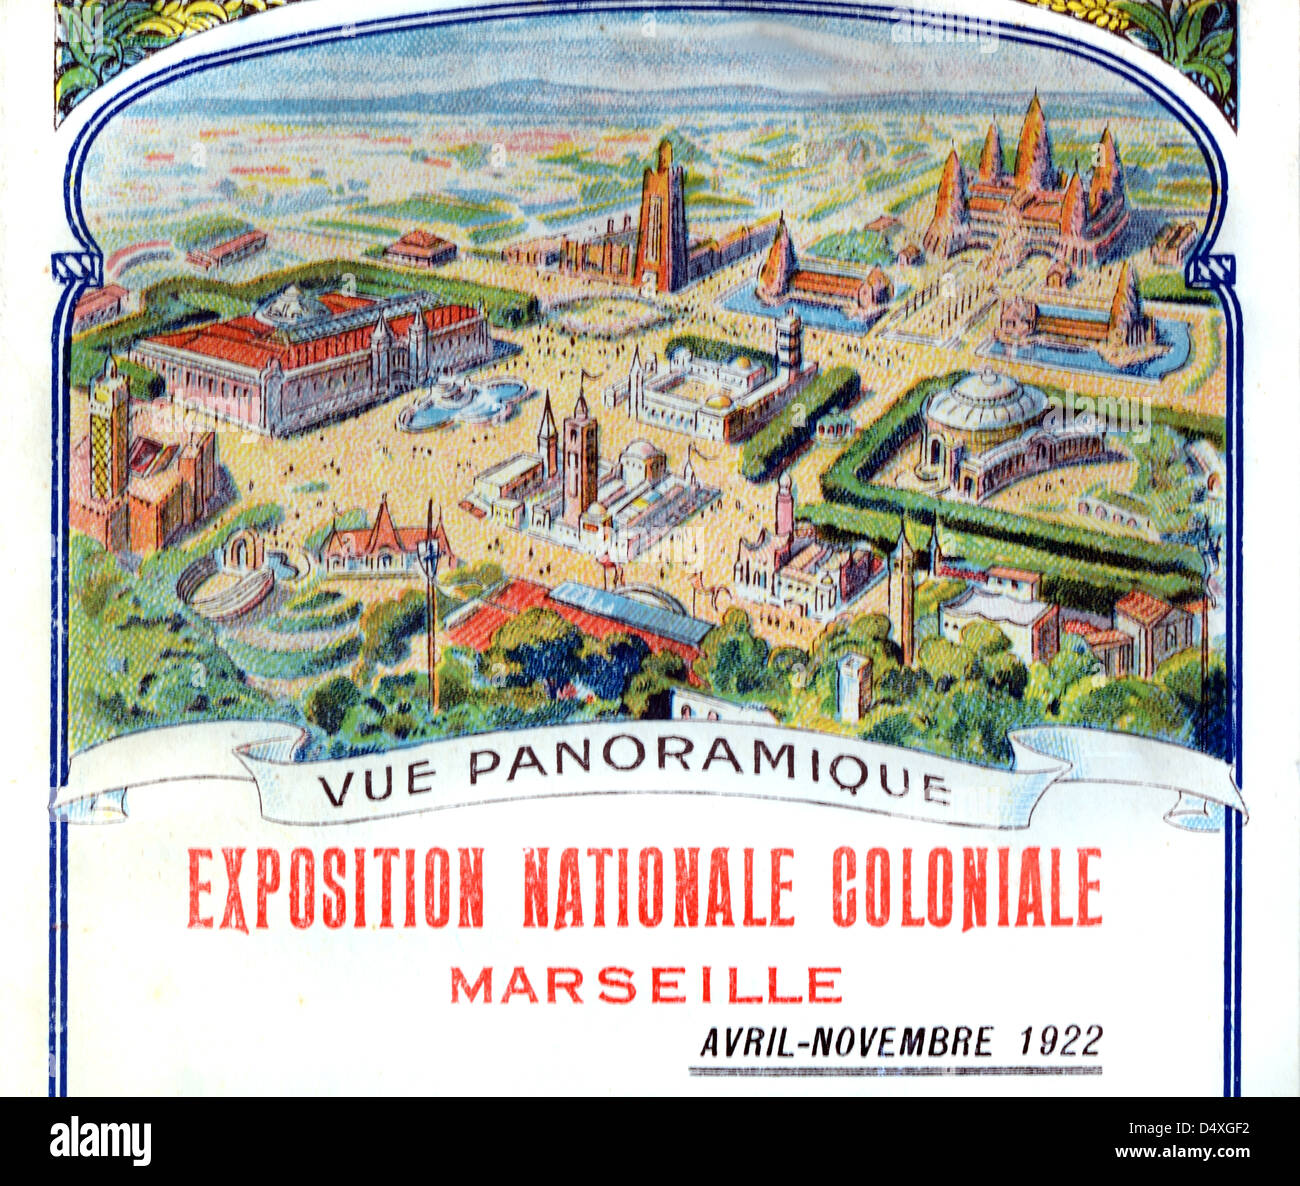 Pubblicità, Pubblicità o Pubblicità per la Mostra Nazionale coloniale di Marsiglia 1922 Francia con vista panoramica del sito espositivo. Illustrazione o incisione vintage Foto Stock